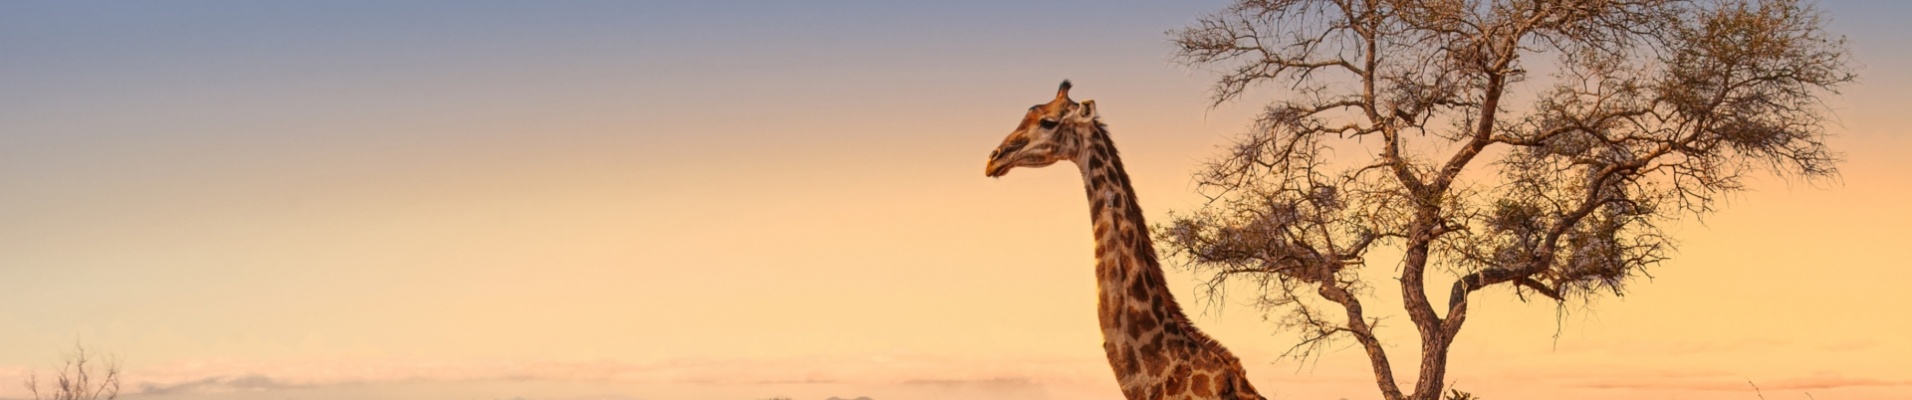 paysage-savane-kruger-girafe